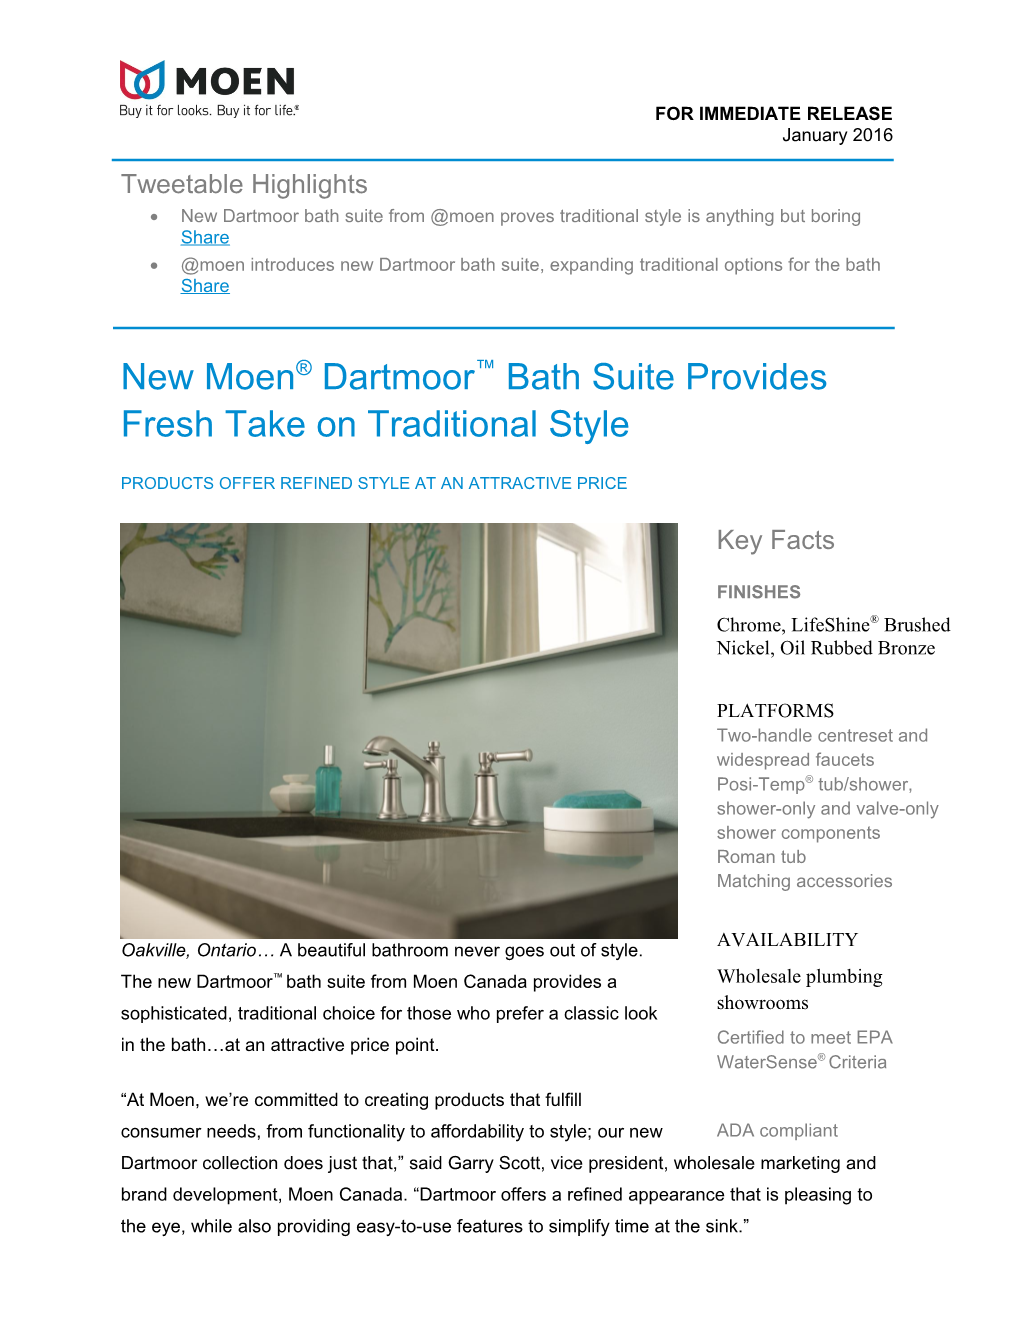 New Moen Dartmoor Bath Suite Provides